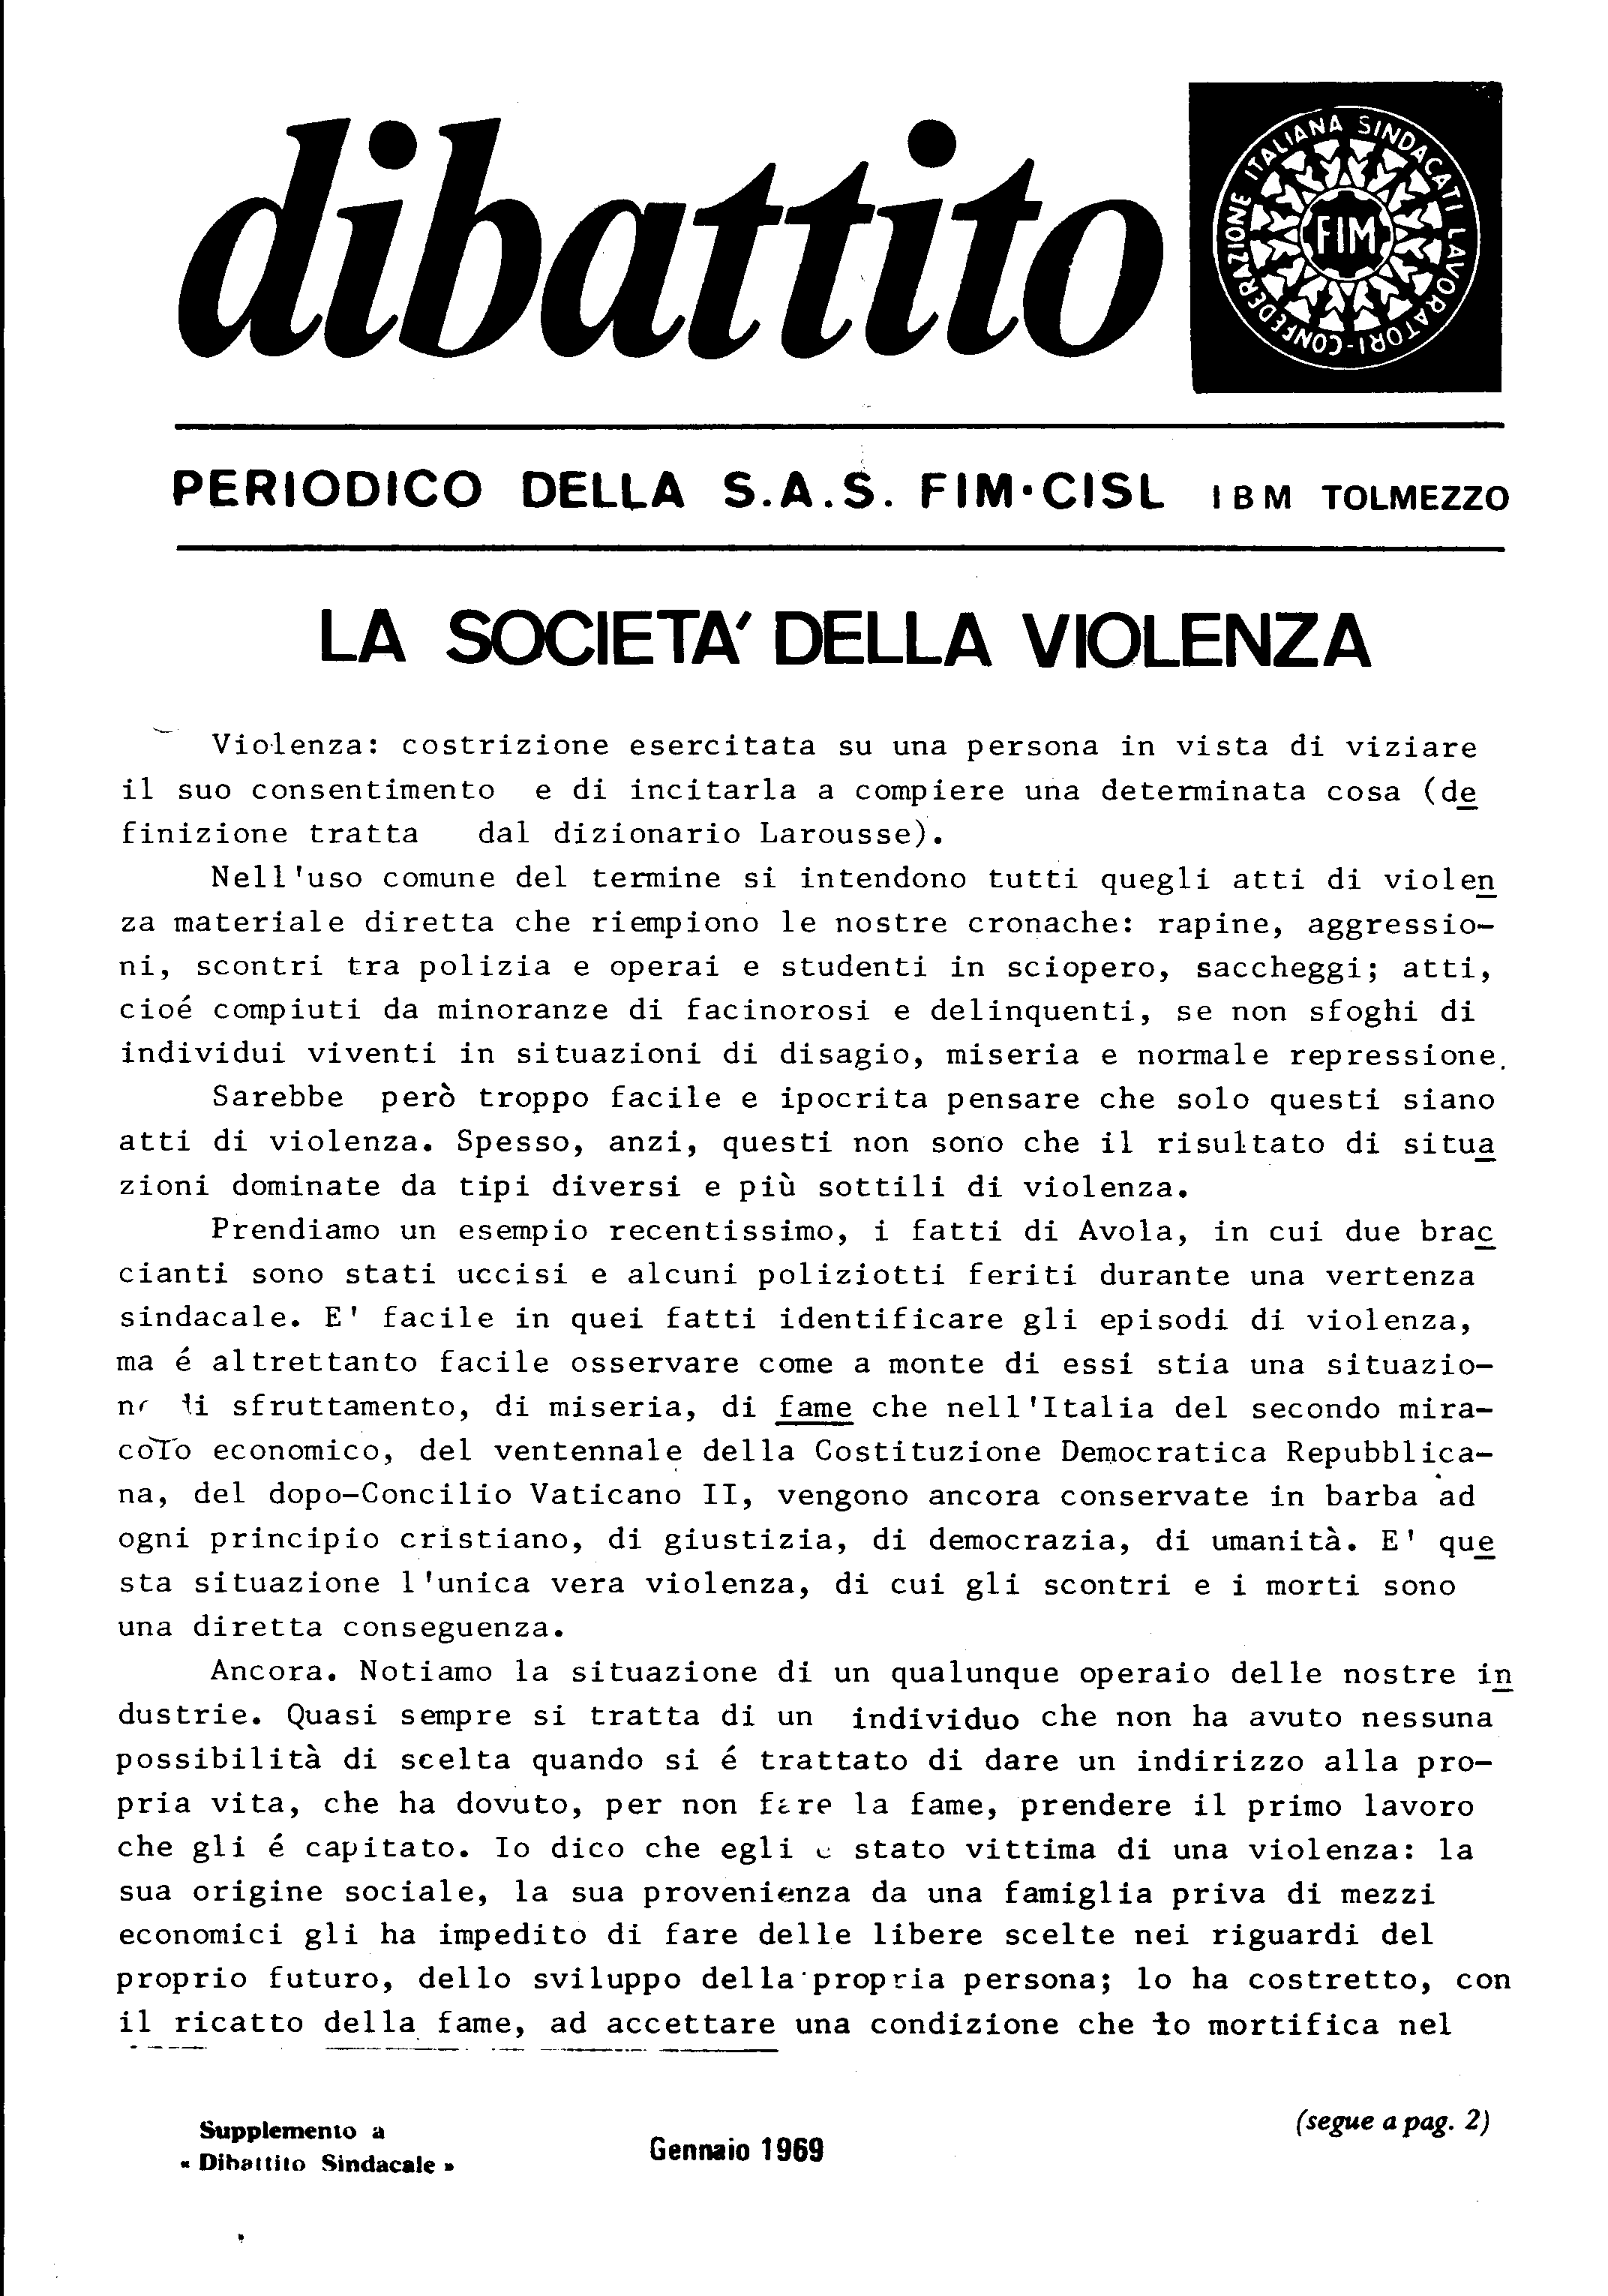 Dibattito - periodico della s.a.s. FIM CISL IBM Tolmezzo - Gennaio 1969